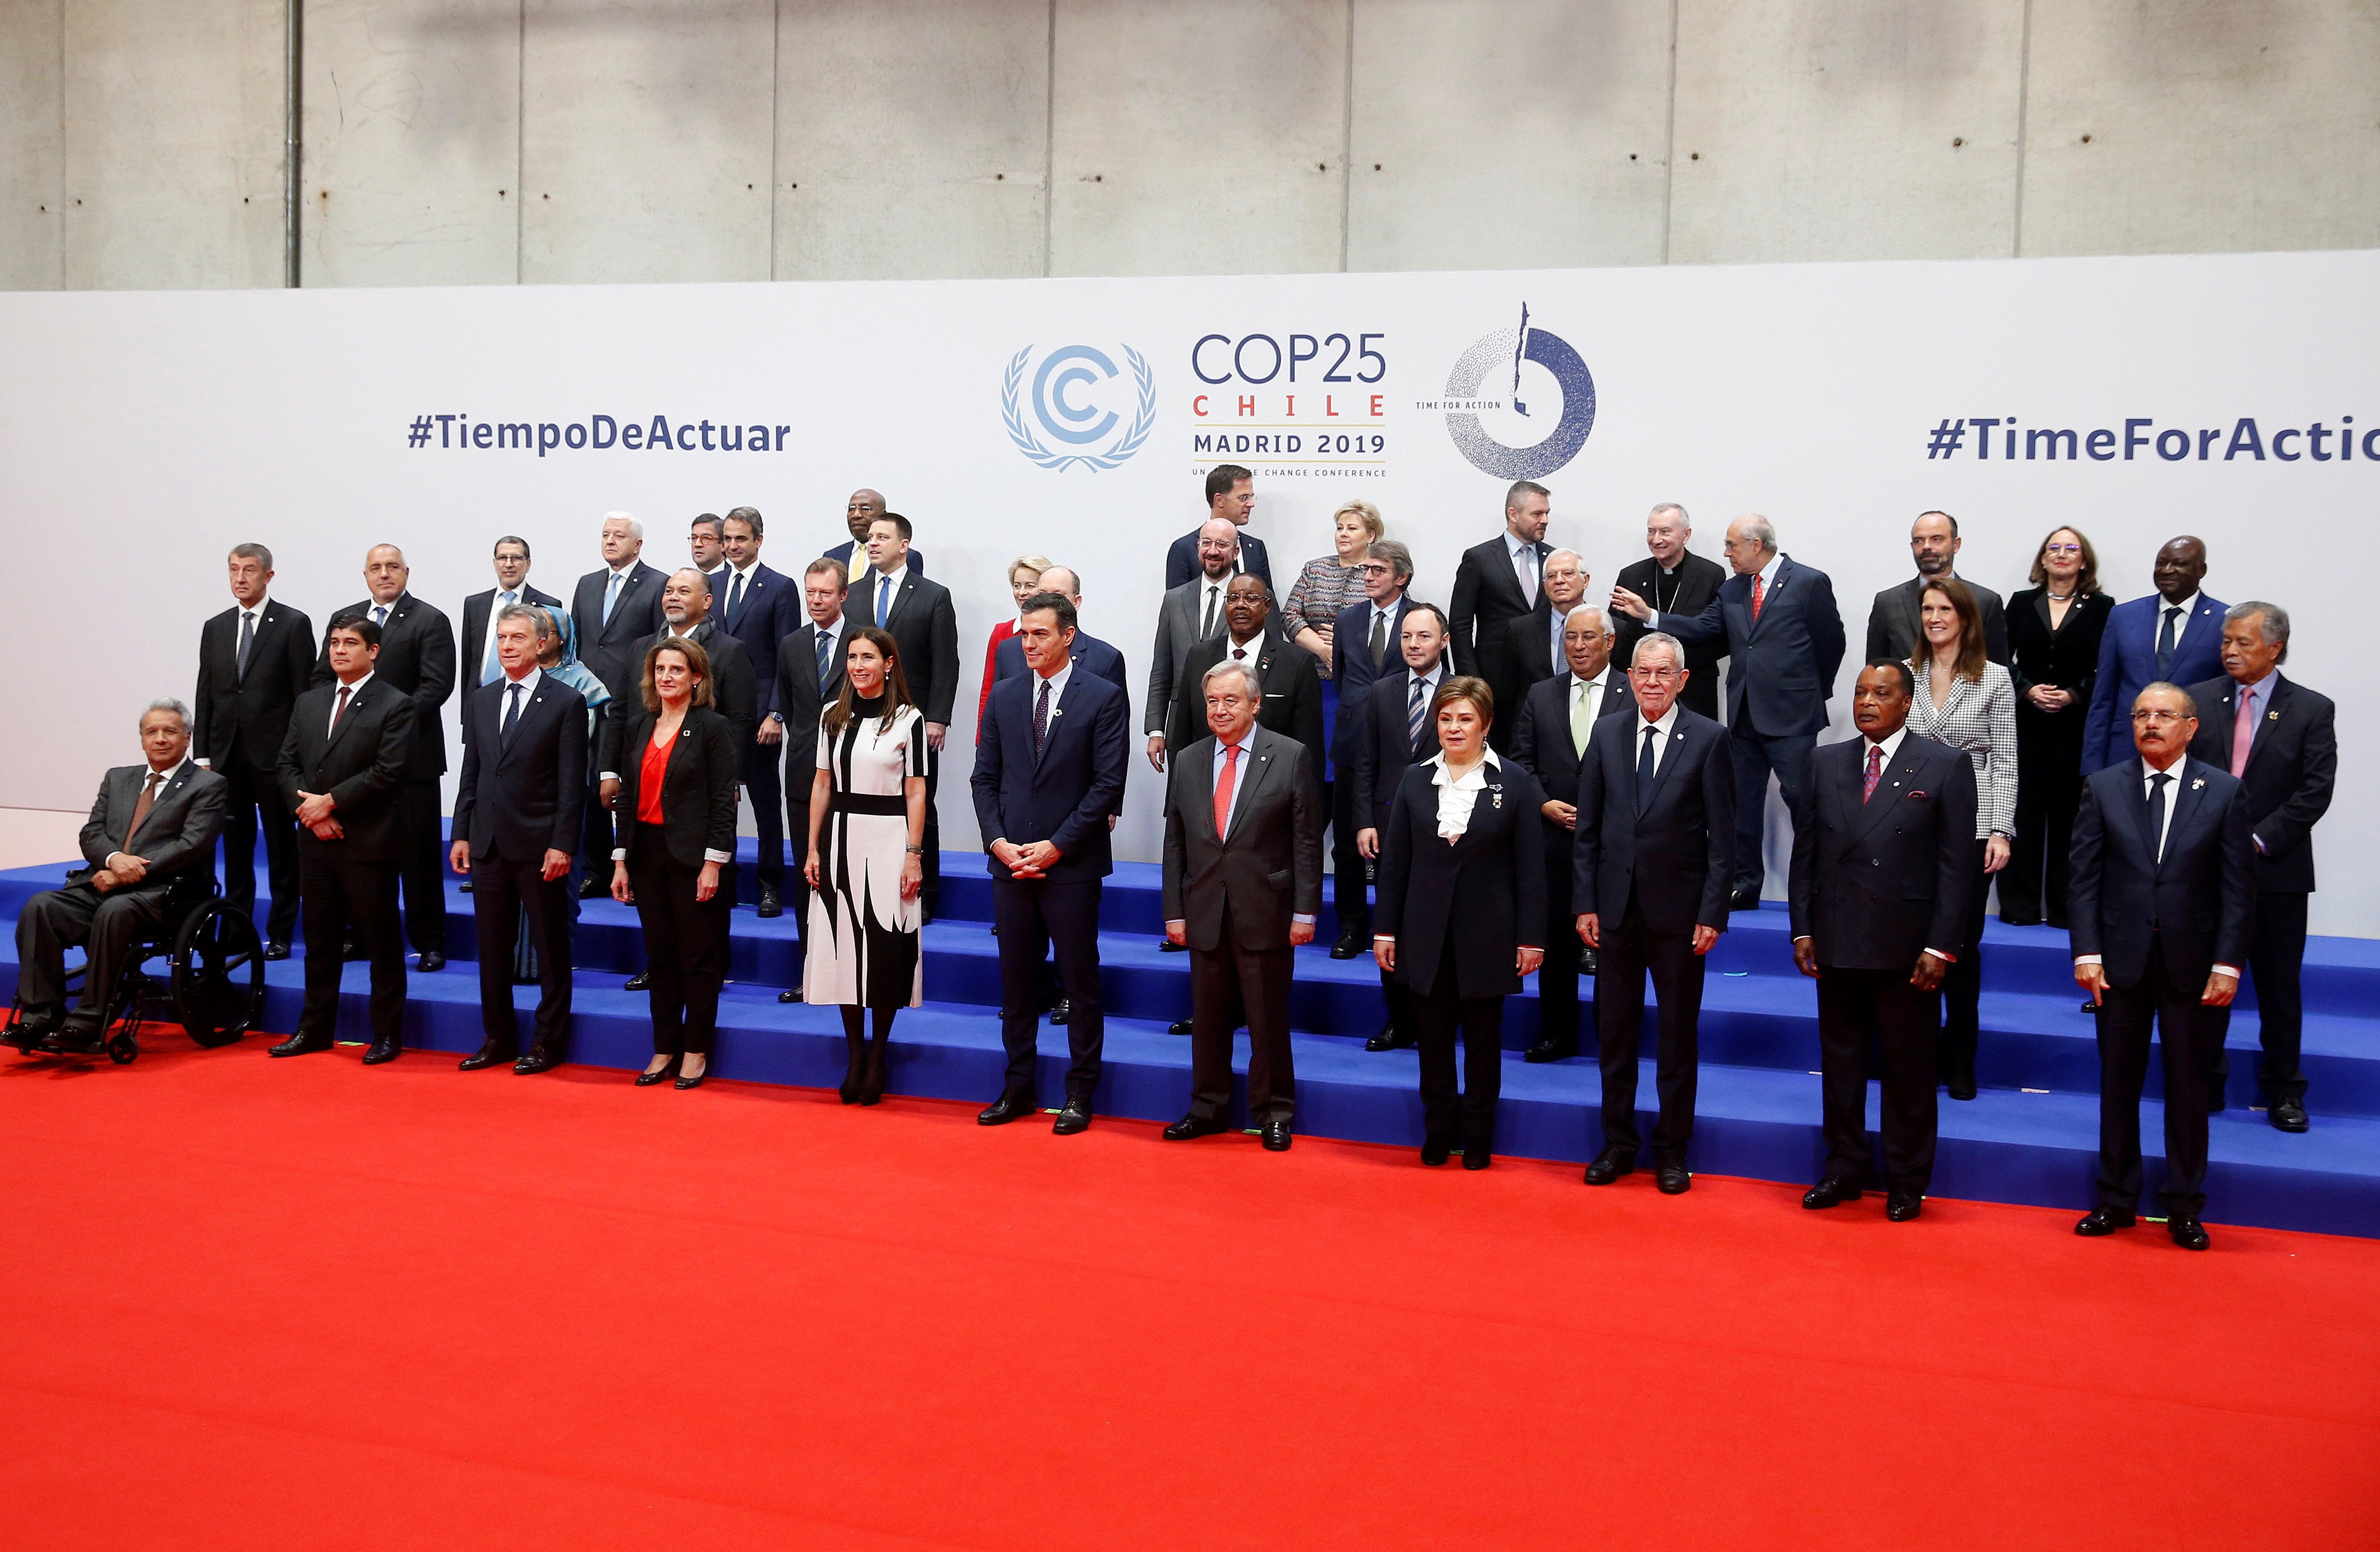 ¿Crees que la COP25 resolverá la crisis climática?